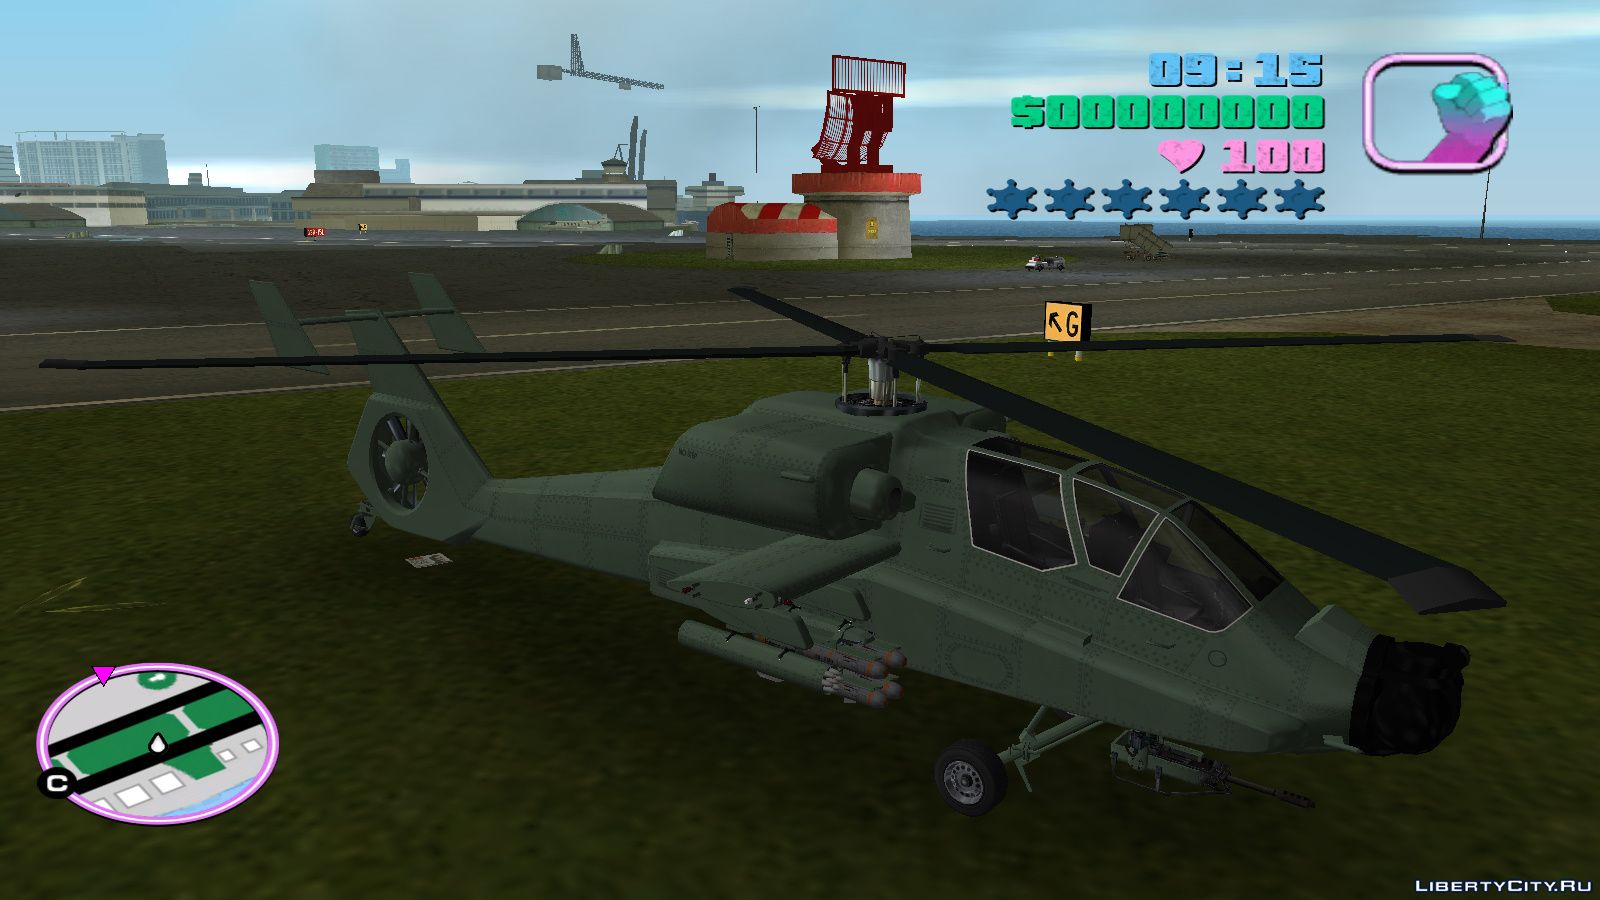 Вай хантер. GTA vice City вертолет Хантер. GTA vice City Deluxe вертолет. Вертолет из ГТА Вайс Сити. GTA vice City вертолет охотник.